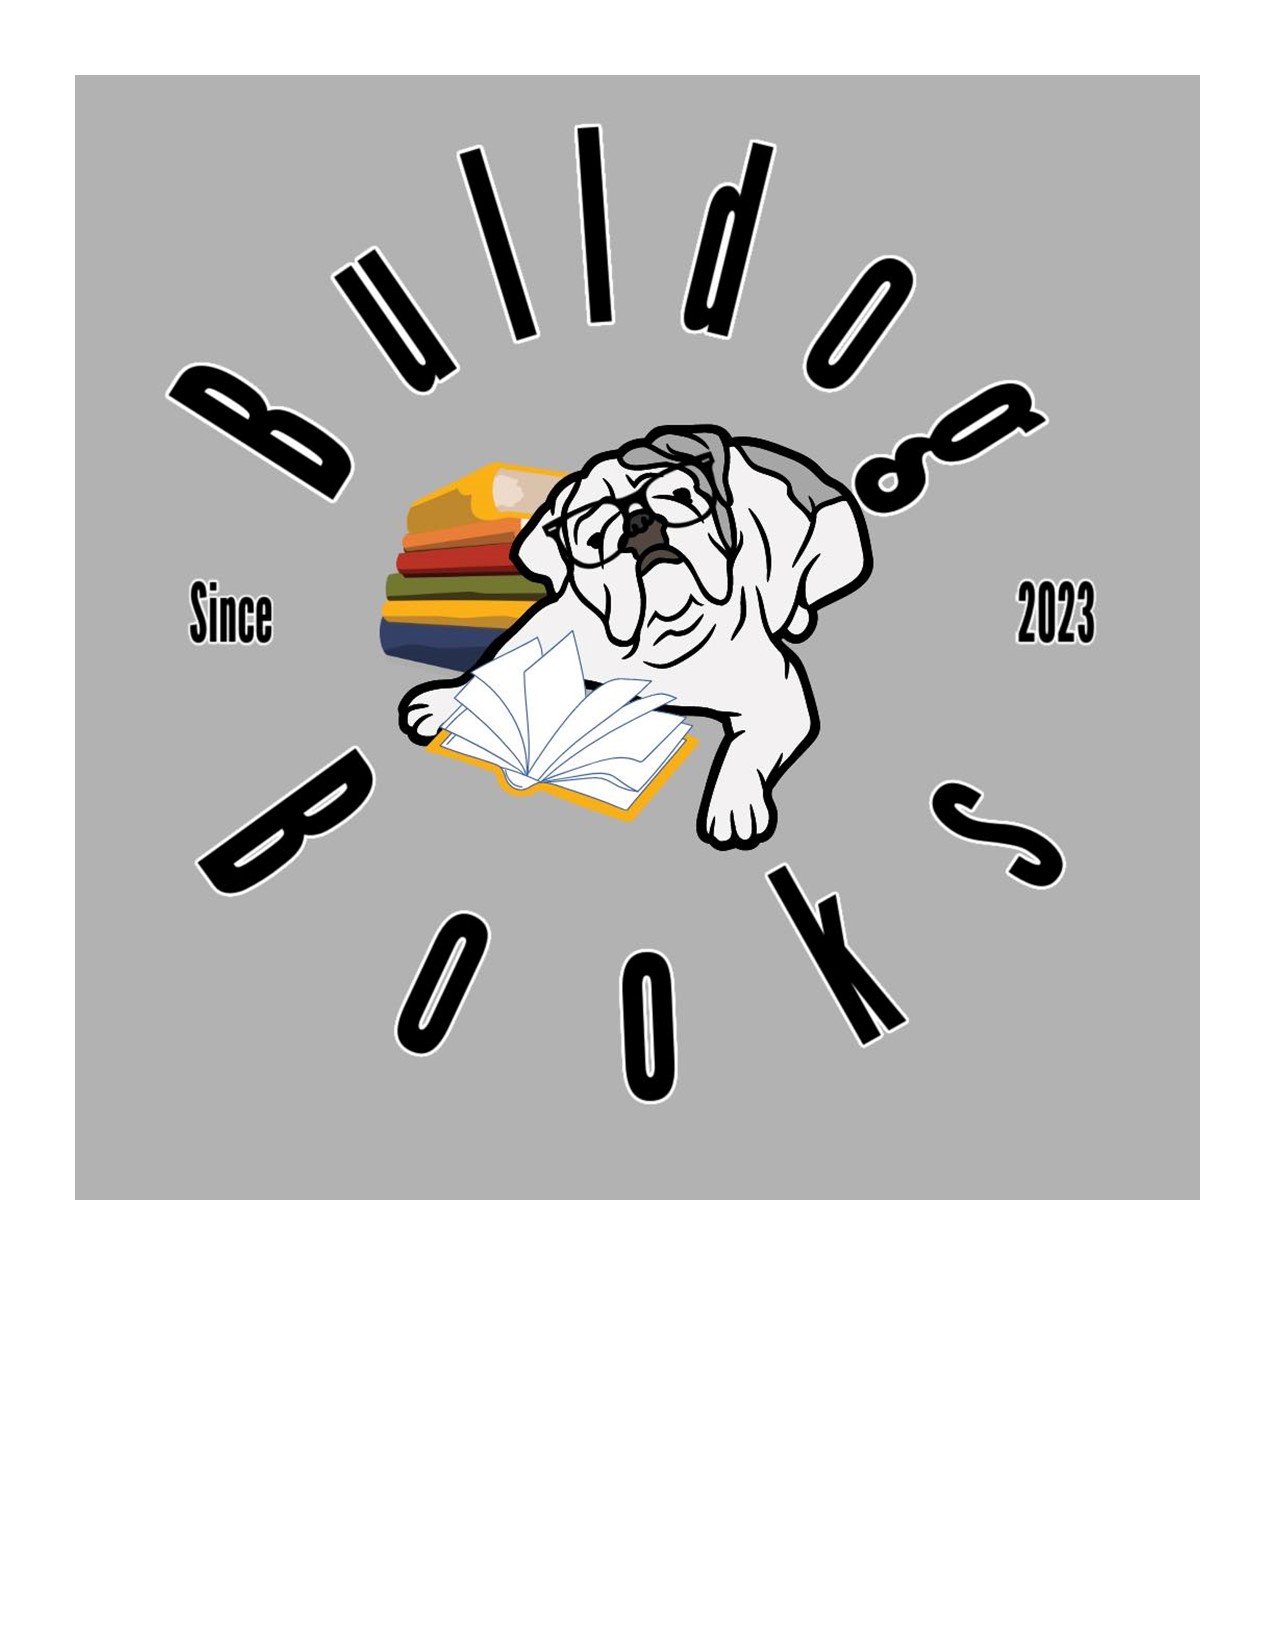 Bulldog Books